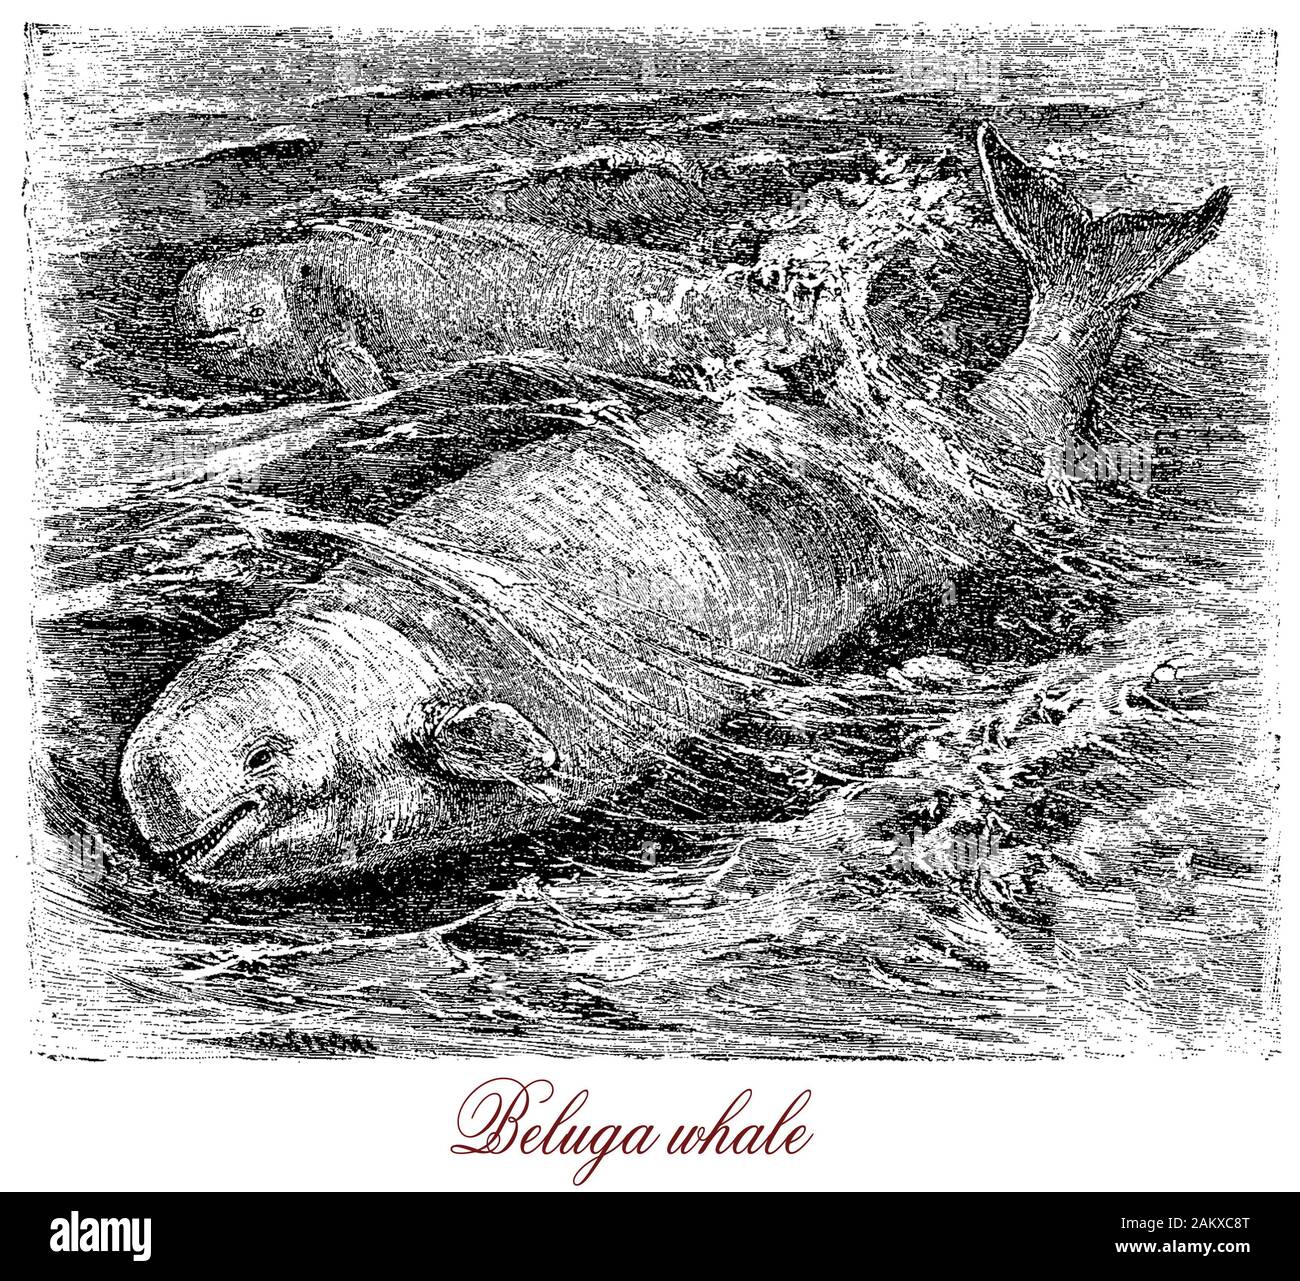 Béluga grégaires arctiques et sub-arctiques de cétacés couleur blanc avec un organe d'écholocation et sens très développé de l'audience, il est considéré comme une espèce en voie de disparition et d'espèces protégées Banque D'Images